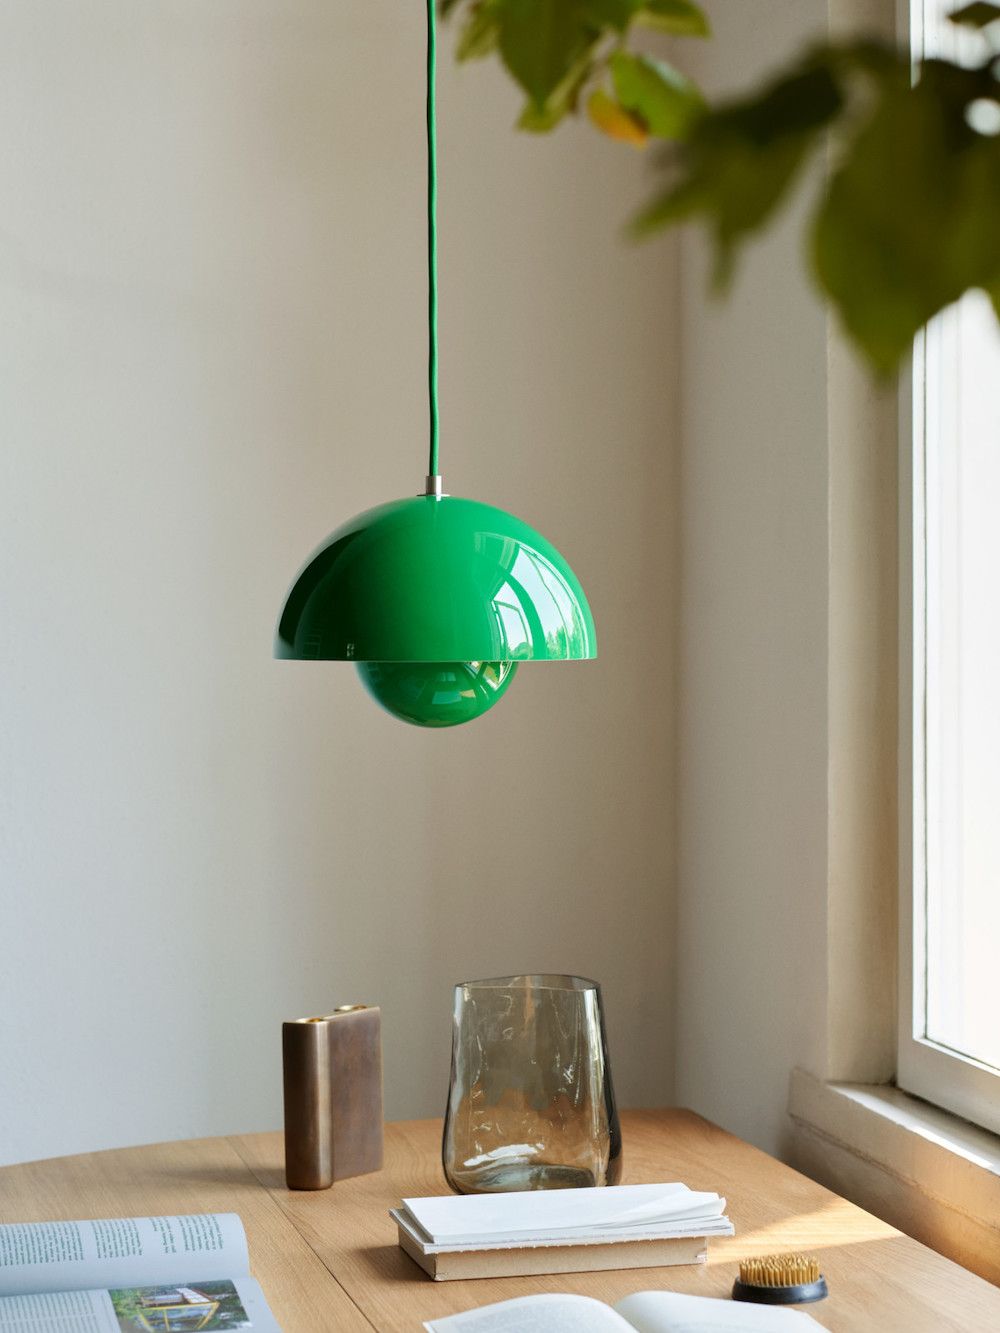 Lampa wisząca zielona w połysku nad stołem